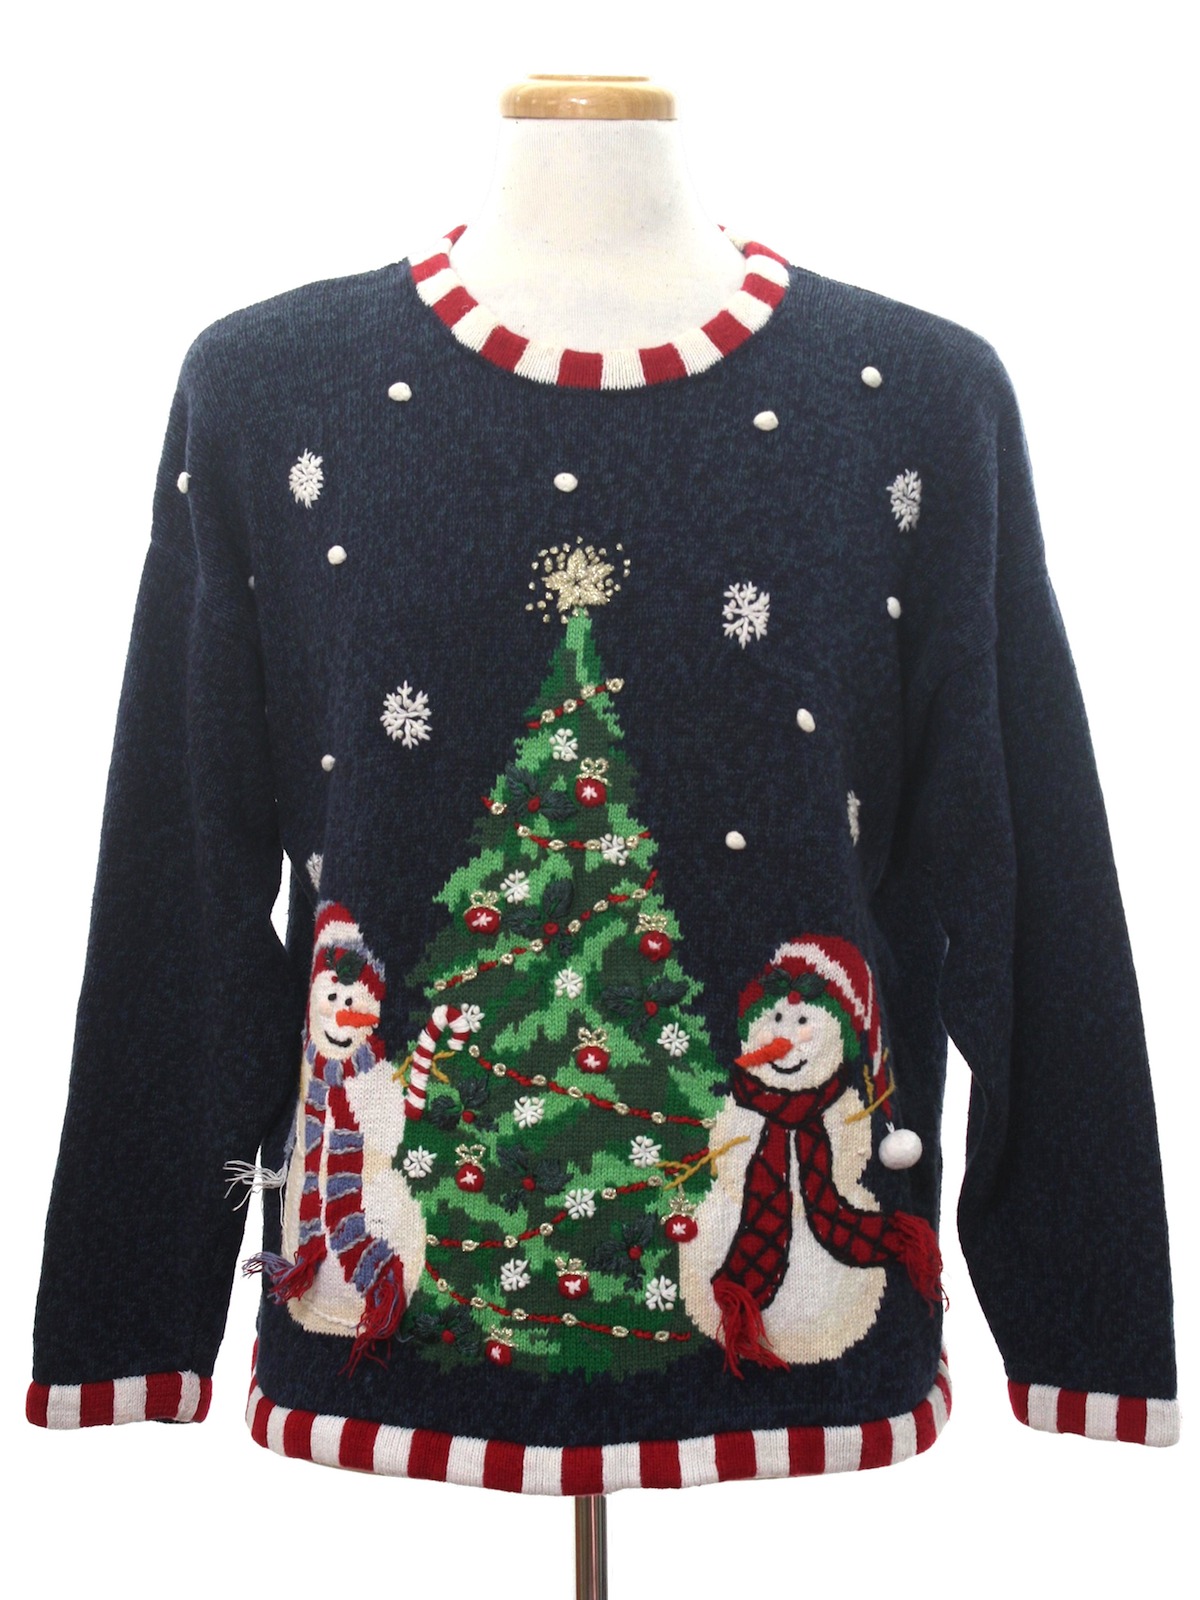 Ugly Christmas Sweater: -Carolina Colours- Unisex heathered navy blue ...